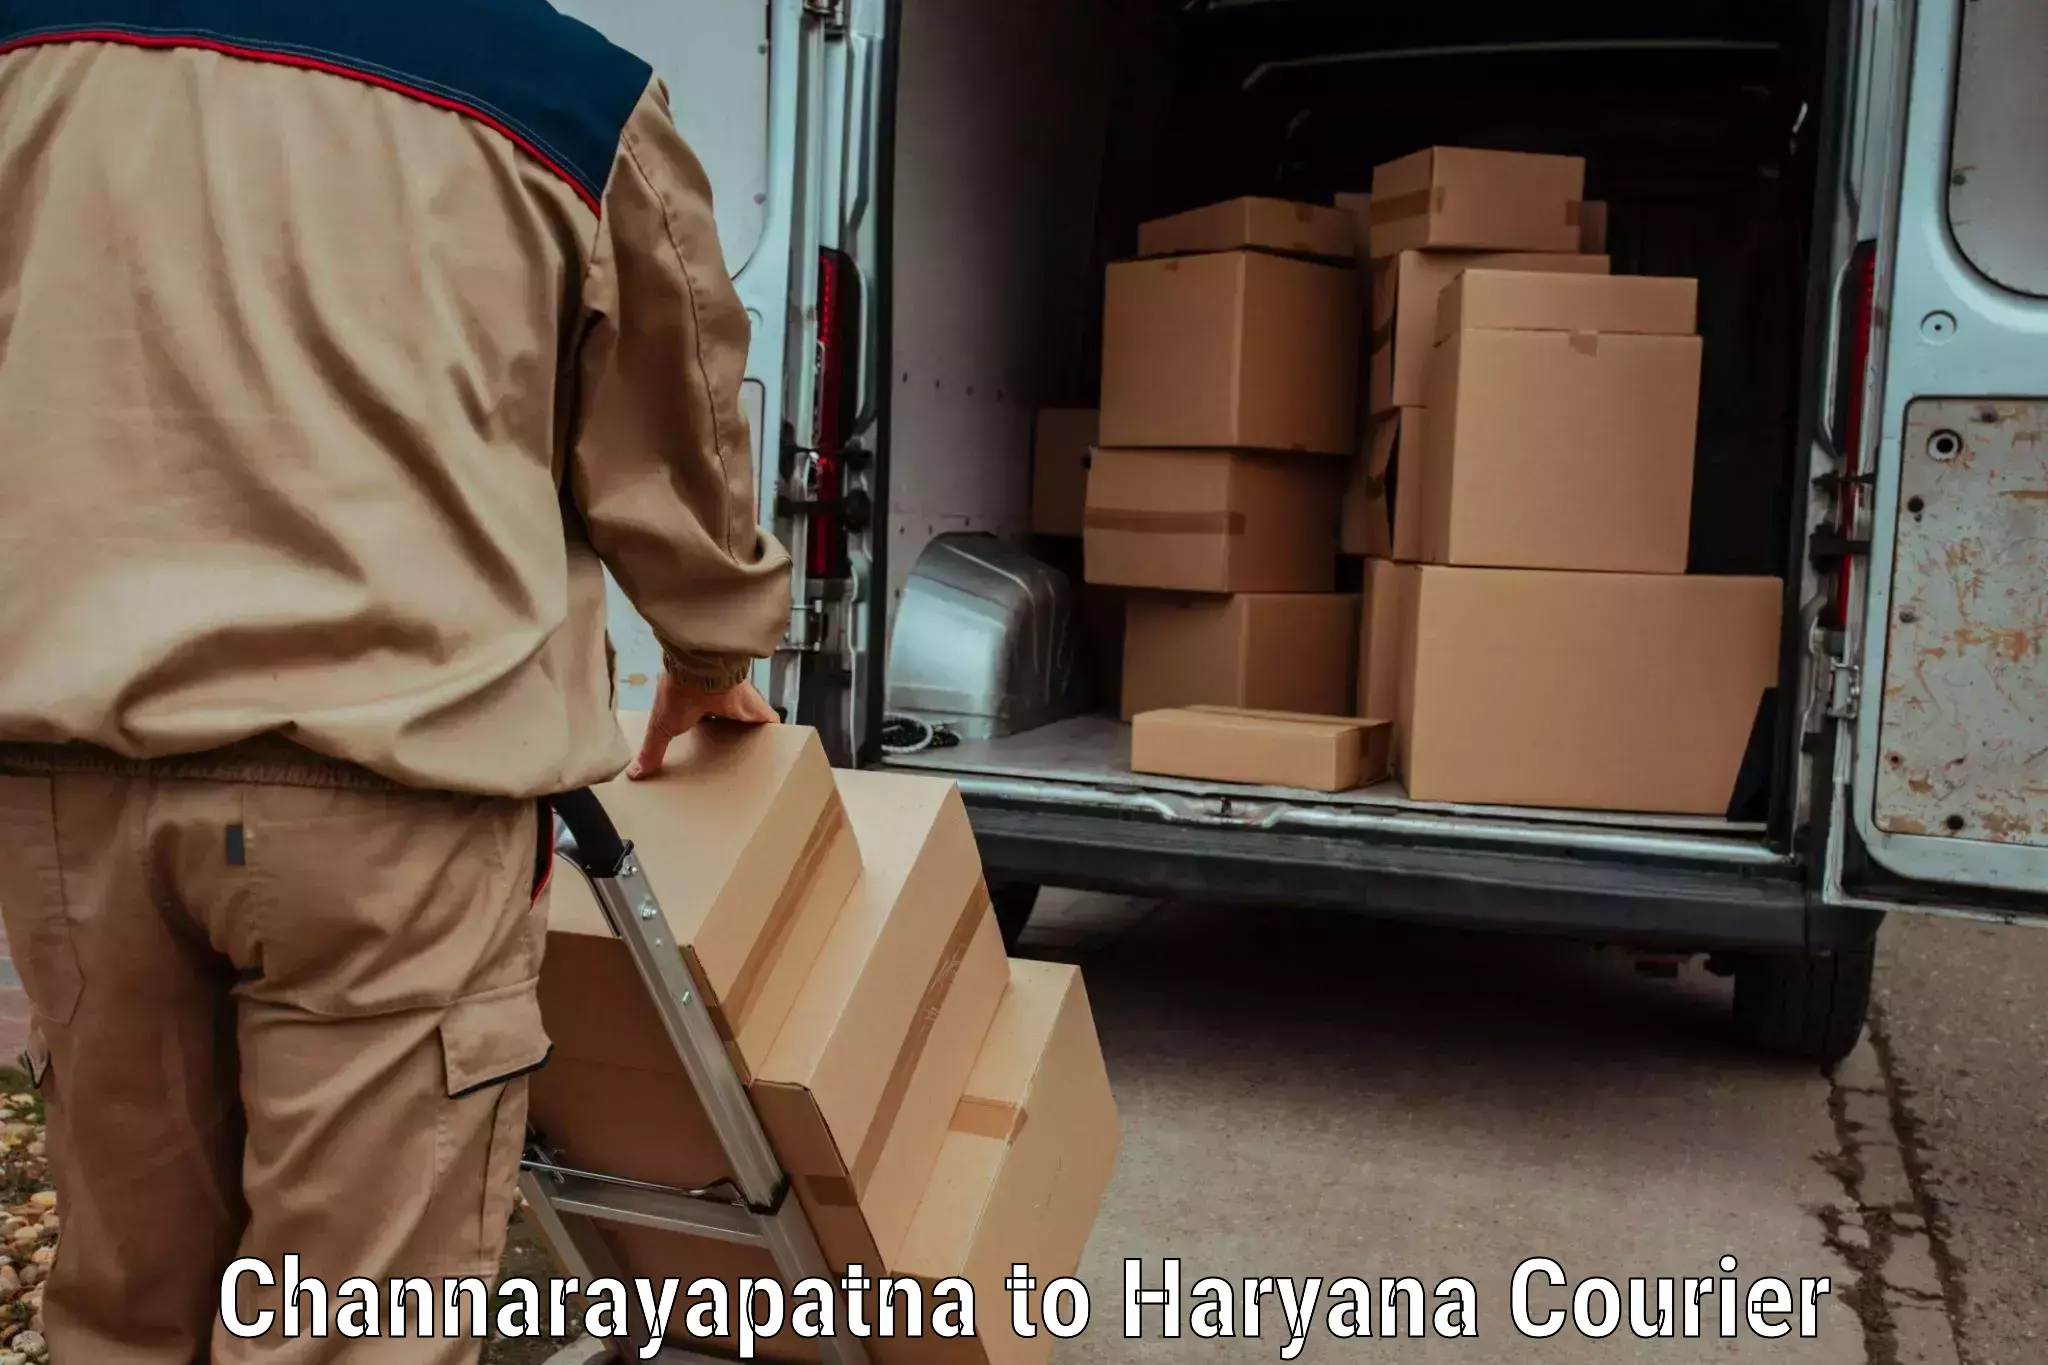 Delivery service partnership in Channarayapatna to Kurukshetra University